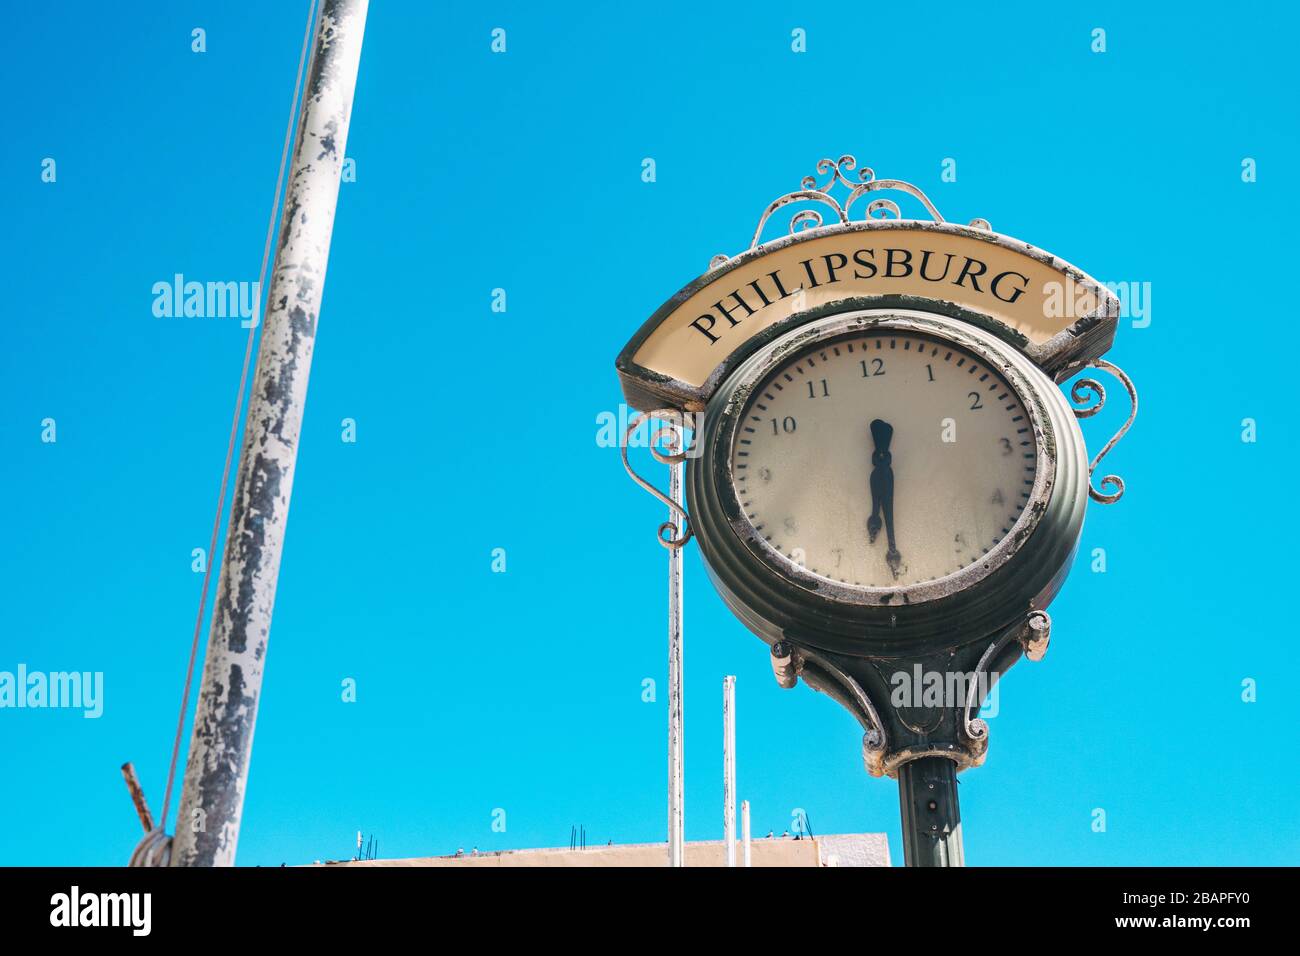 Une horloge publique brisée avec le mot "Philipsburg" au-dessus, dans la capitale de Sint Maarten, aux Caraïbes Pays-Bas Banque D'Images